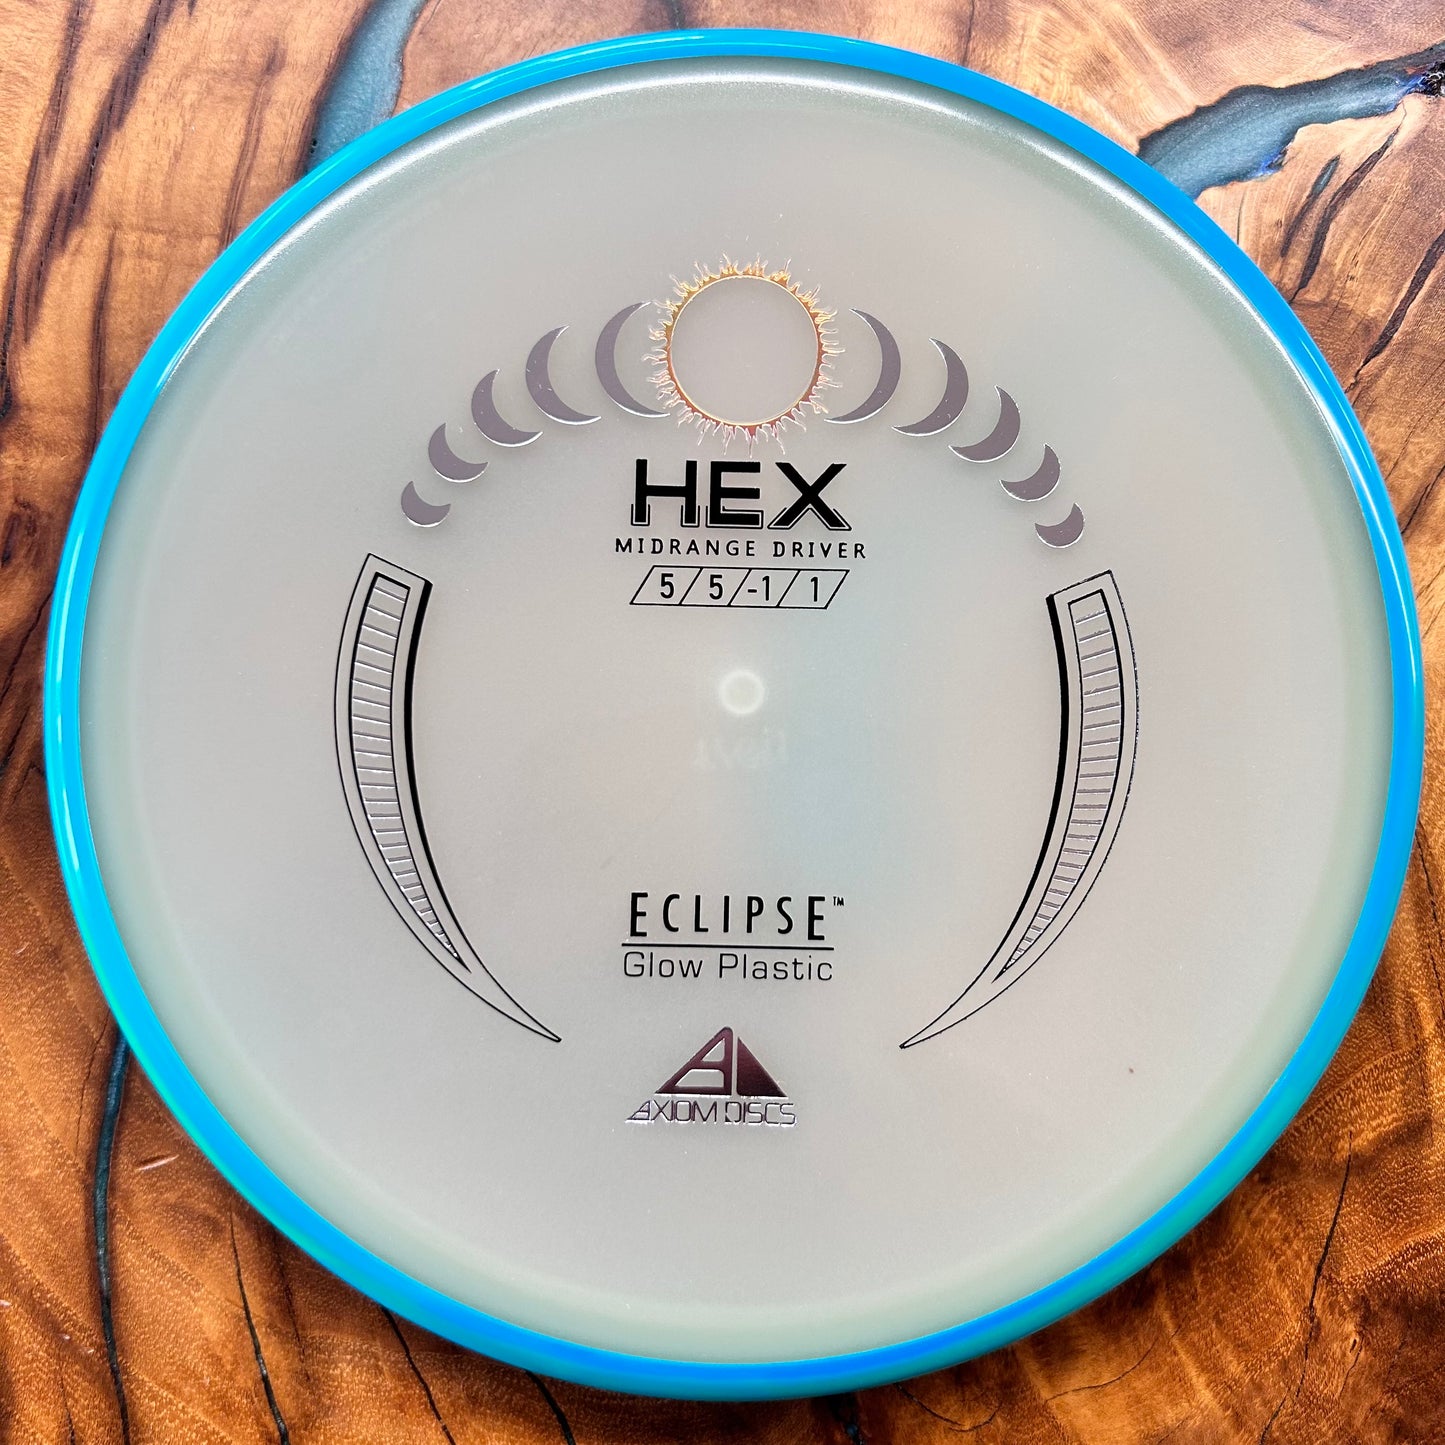 Axiom Discs Eclipse Hex